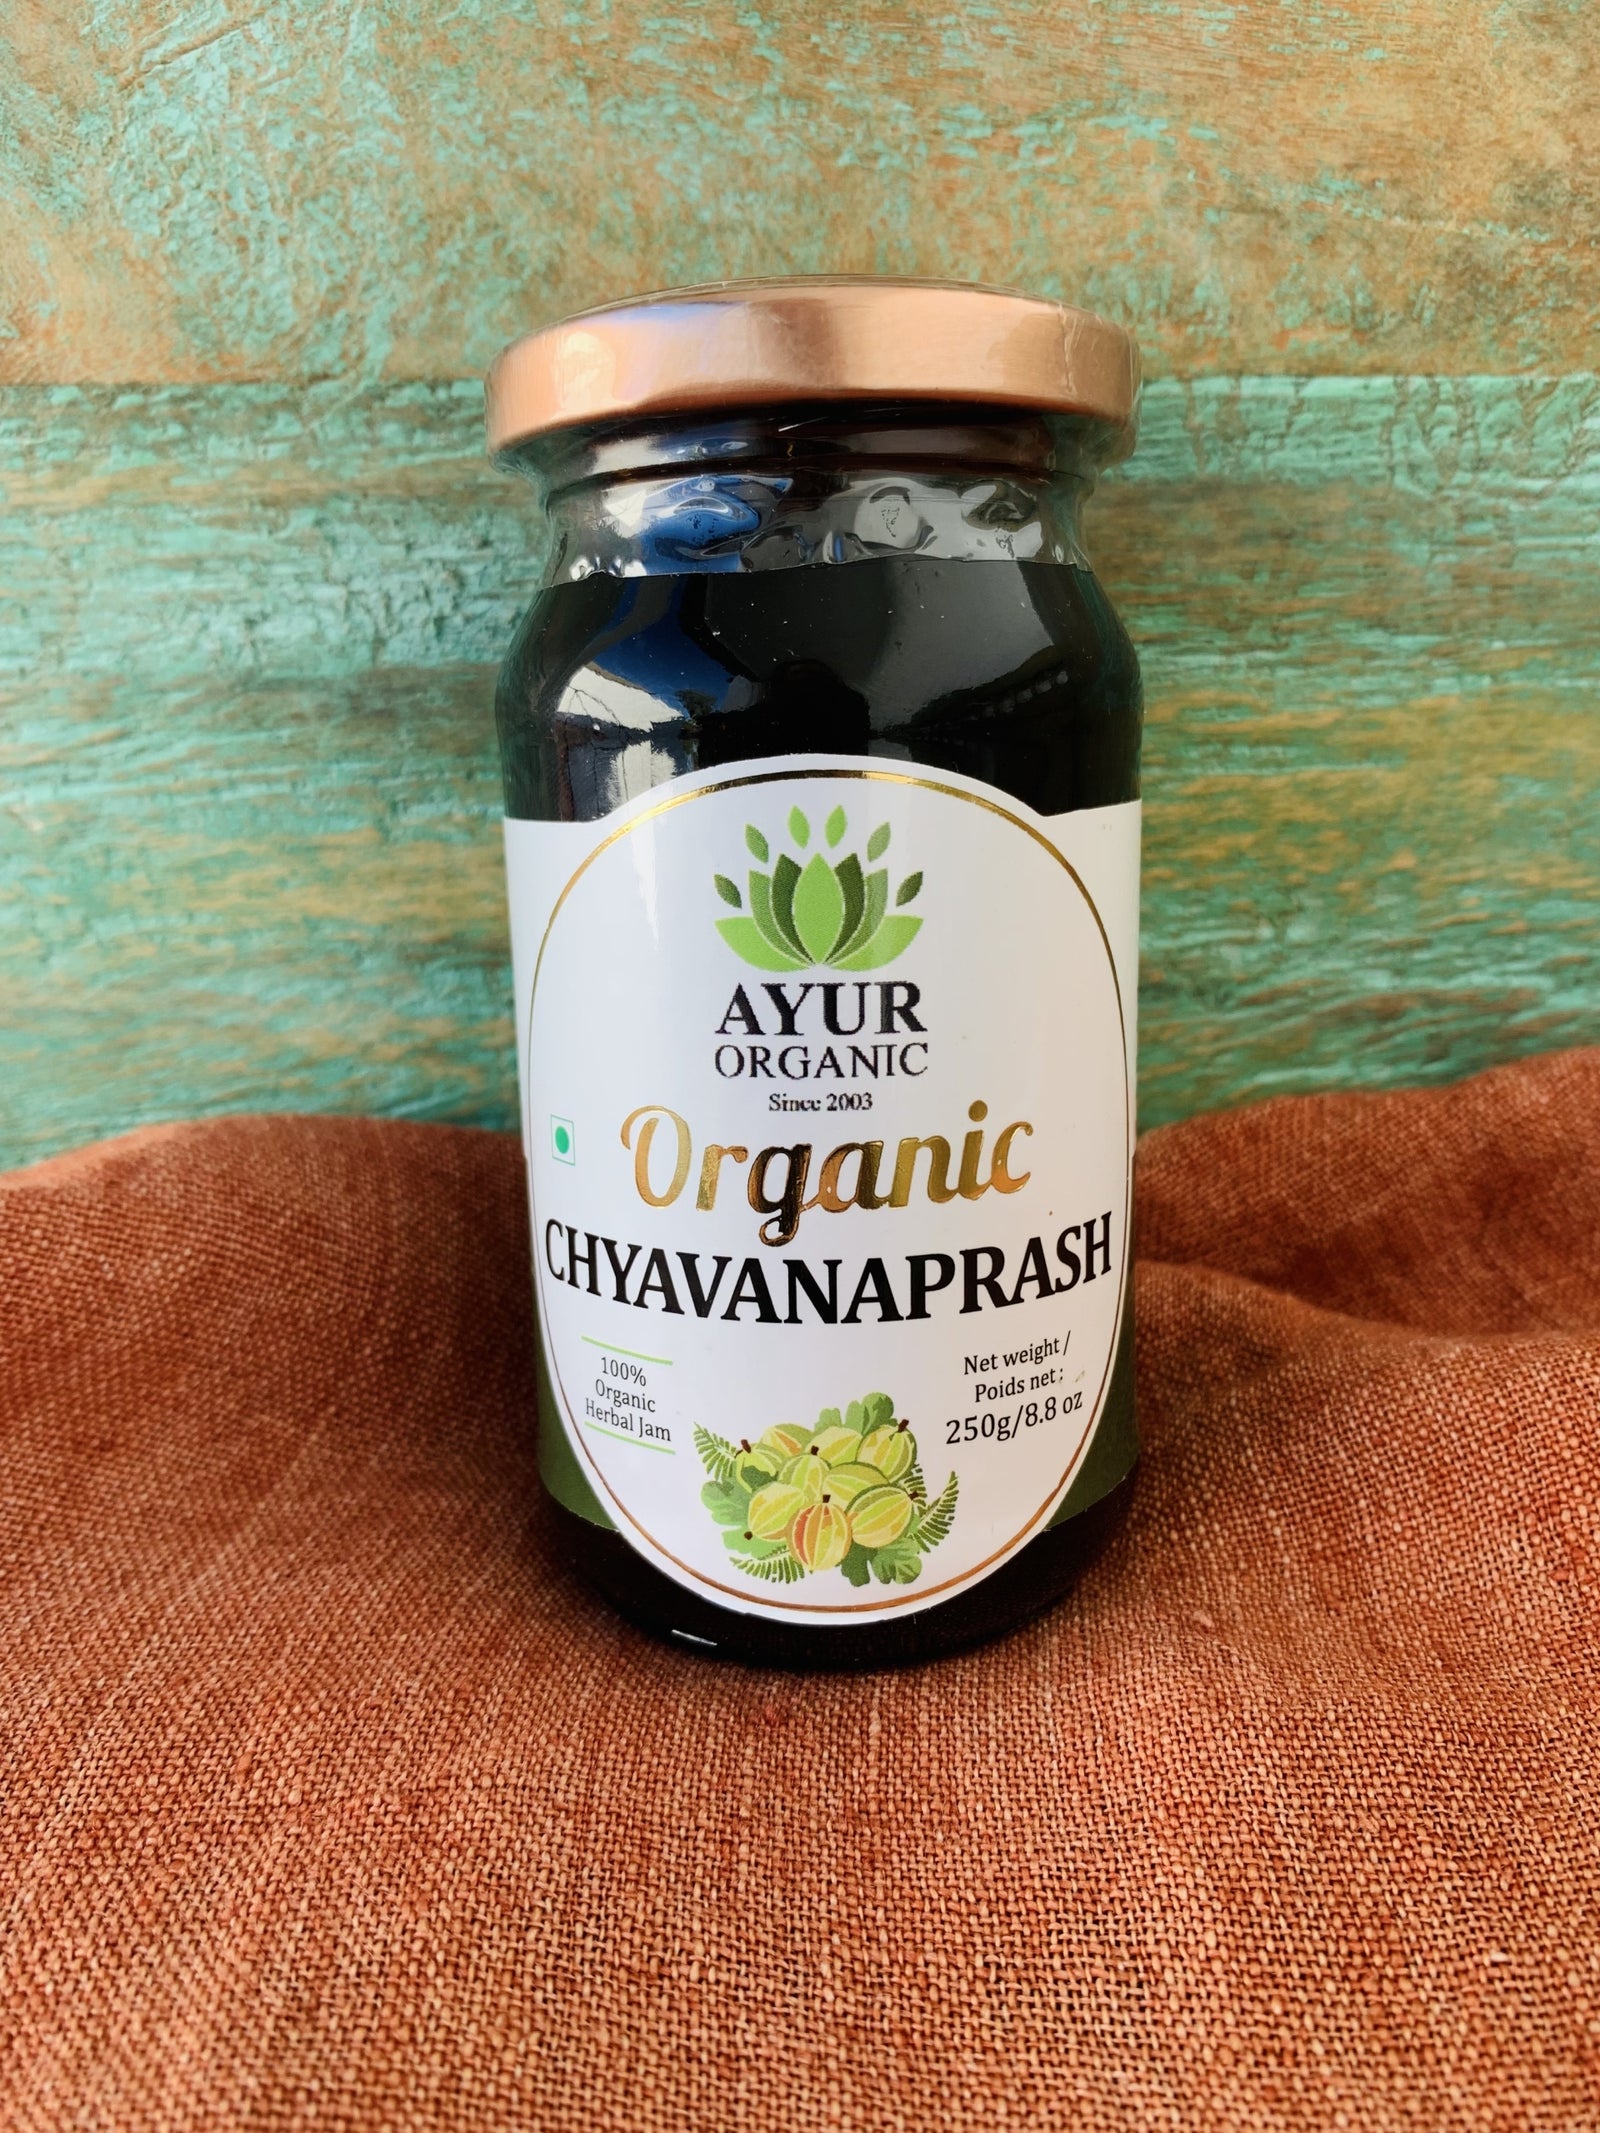 Ayur Organic Chyavanaprash 250g